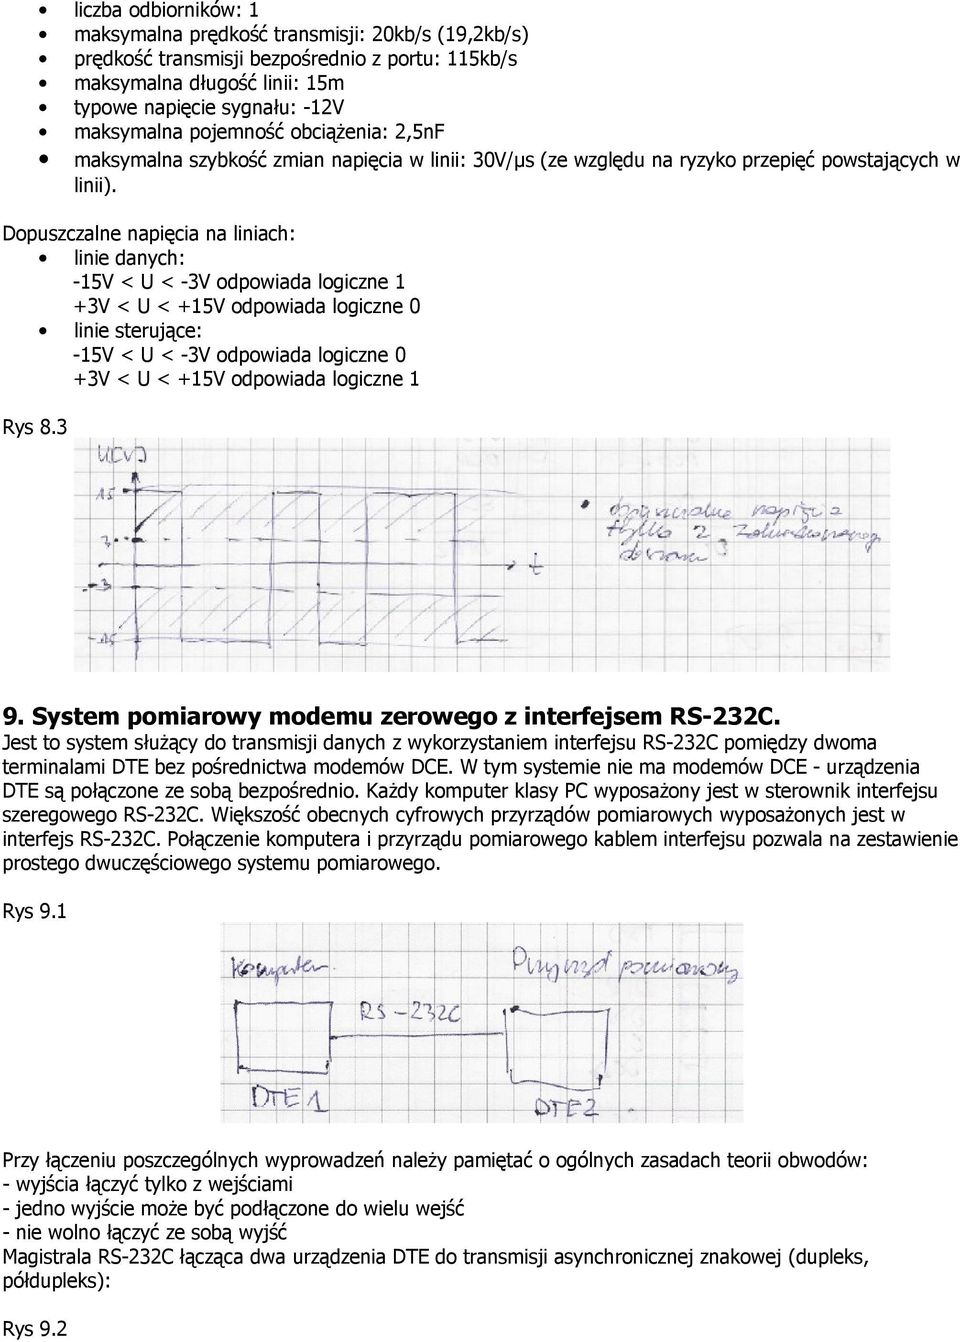 Dopuszczalne napięcia na liniach: linie danych: -15V < U < -3V odpowiada logiczne 1 +3V < U < +15V odpowiada logiczne 0 linie sterujące: -15V < U < -3V odpowiada logiczne 0 +3V < U < +15V odpowiada